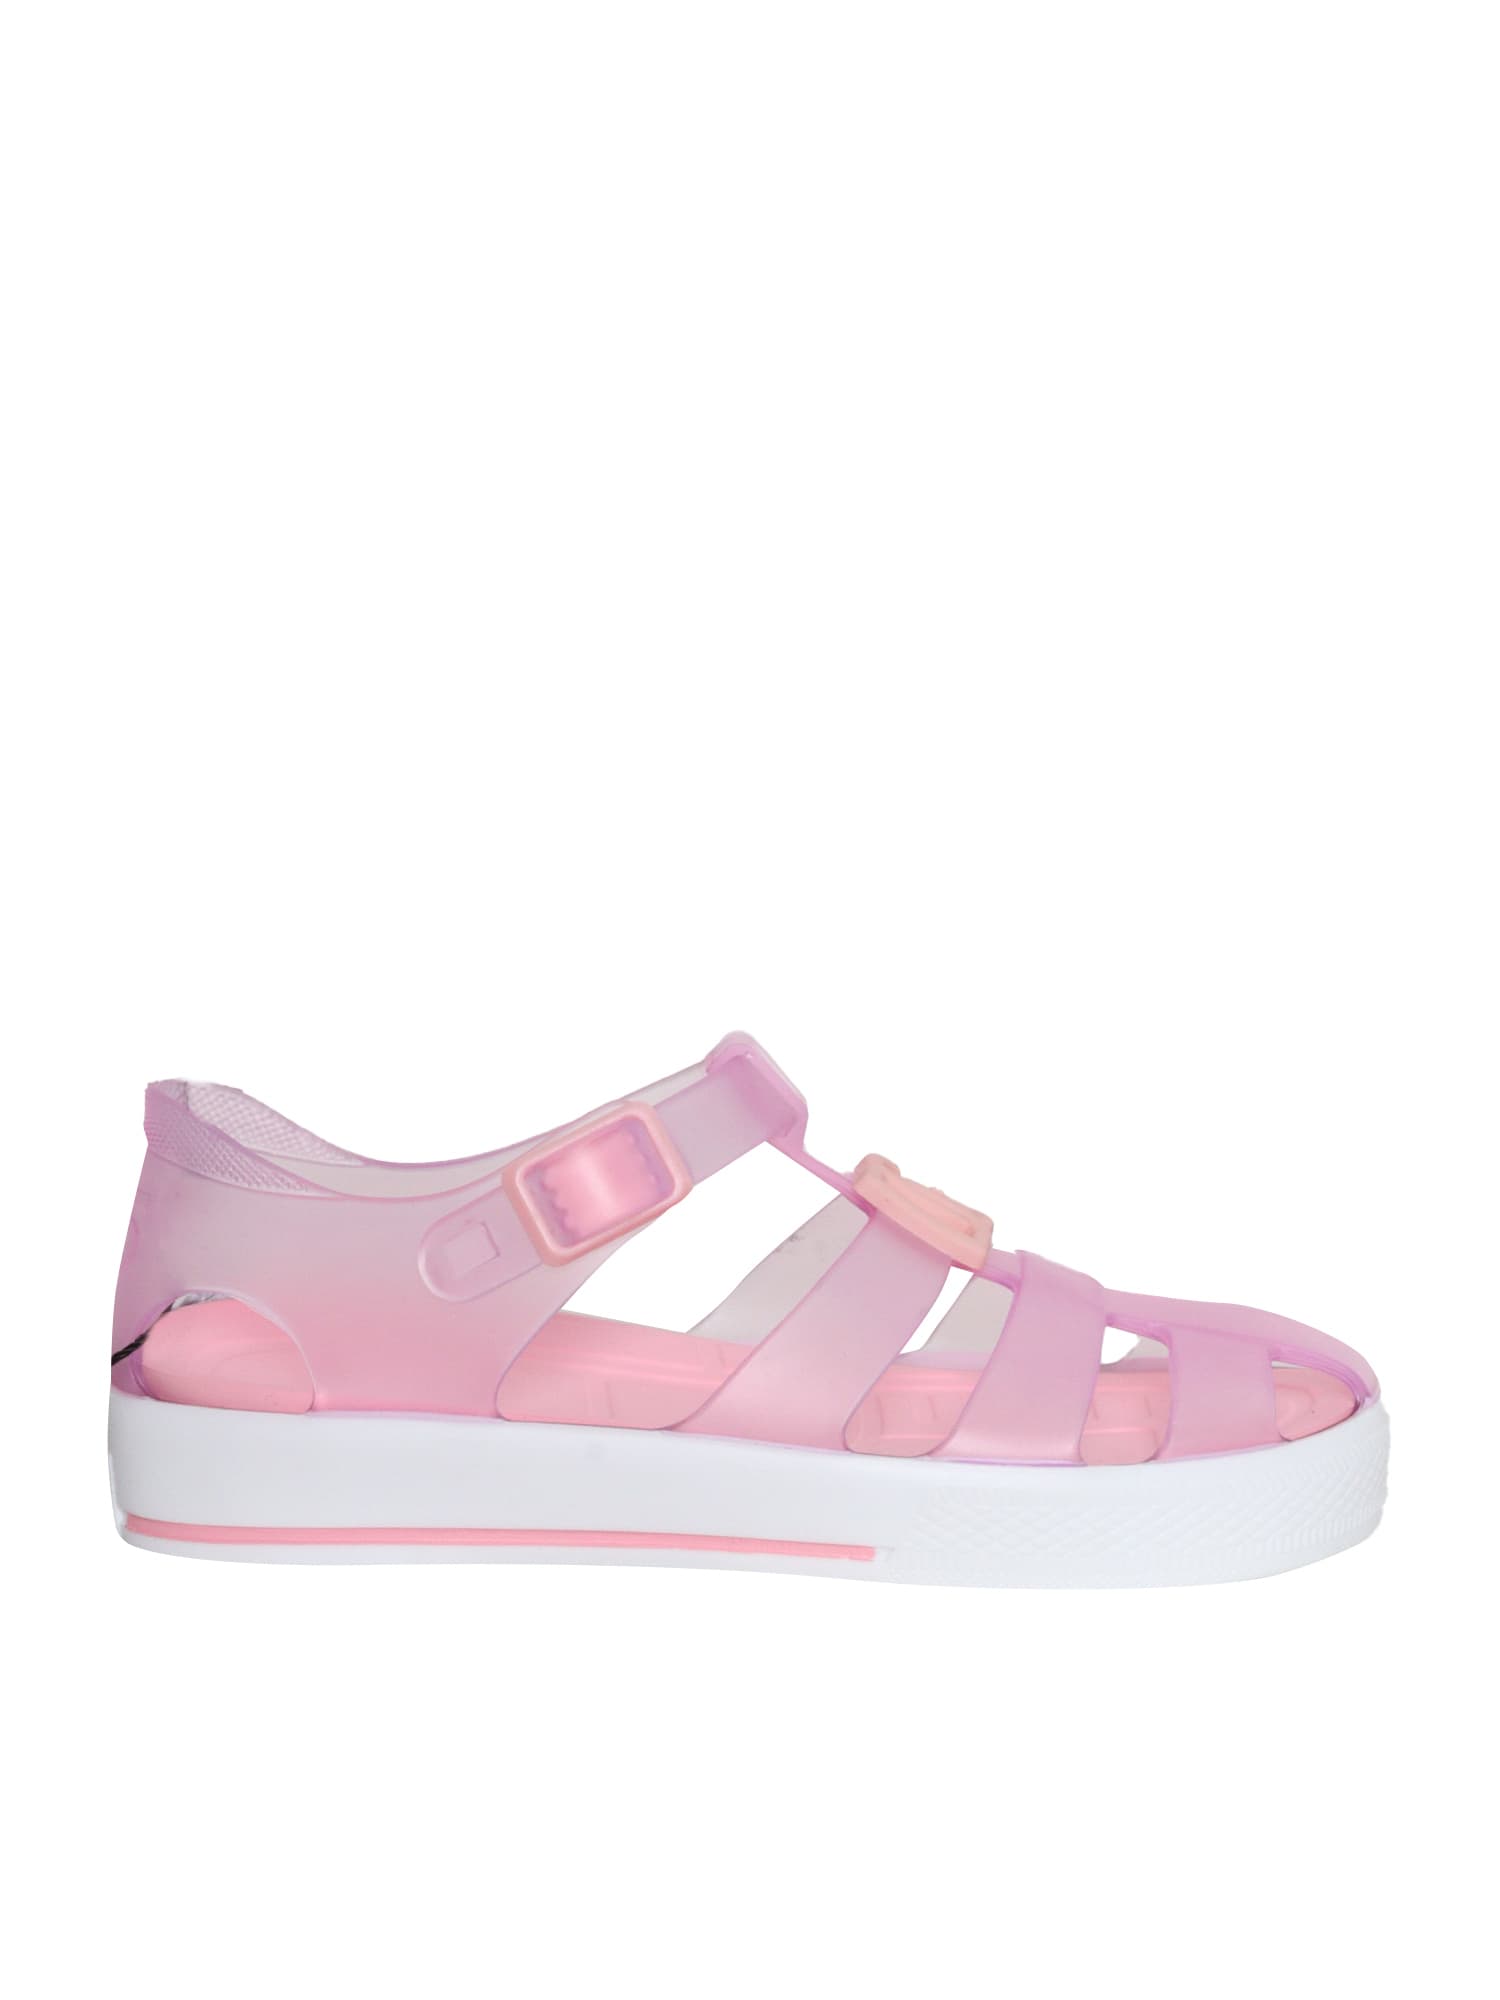 Dolce & Gabbana Pink Spider Sandals